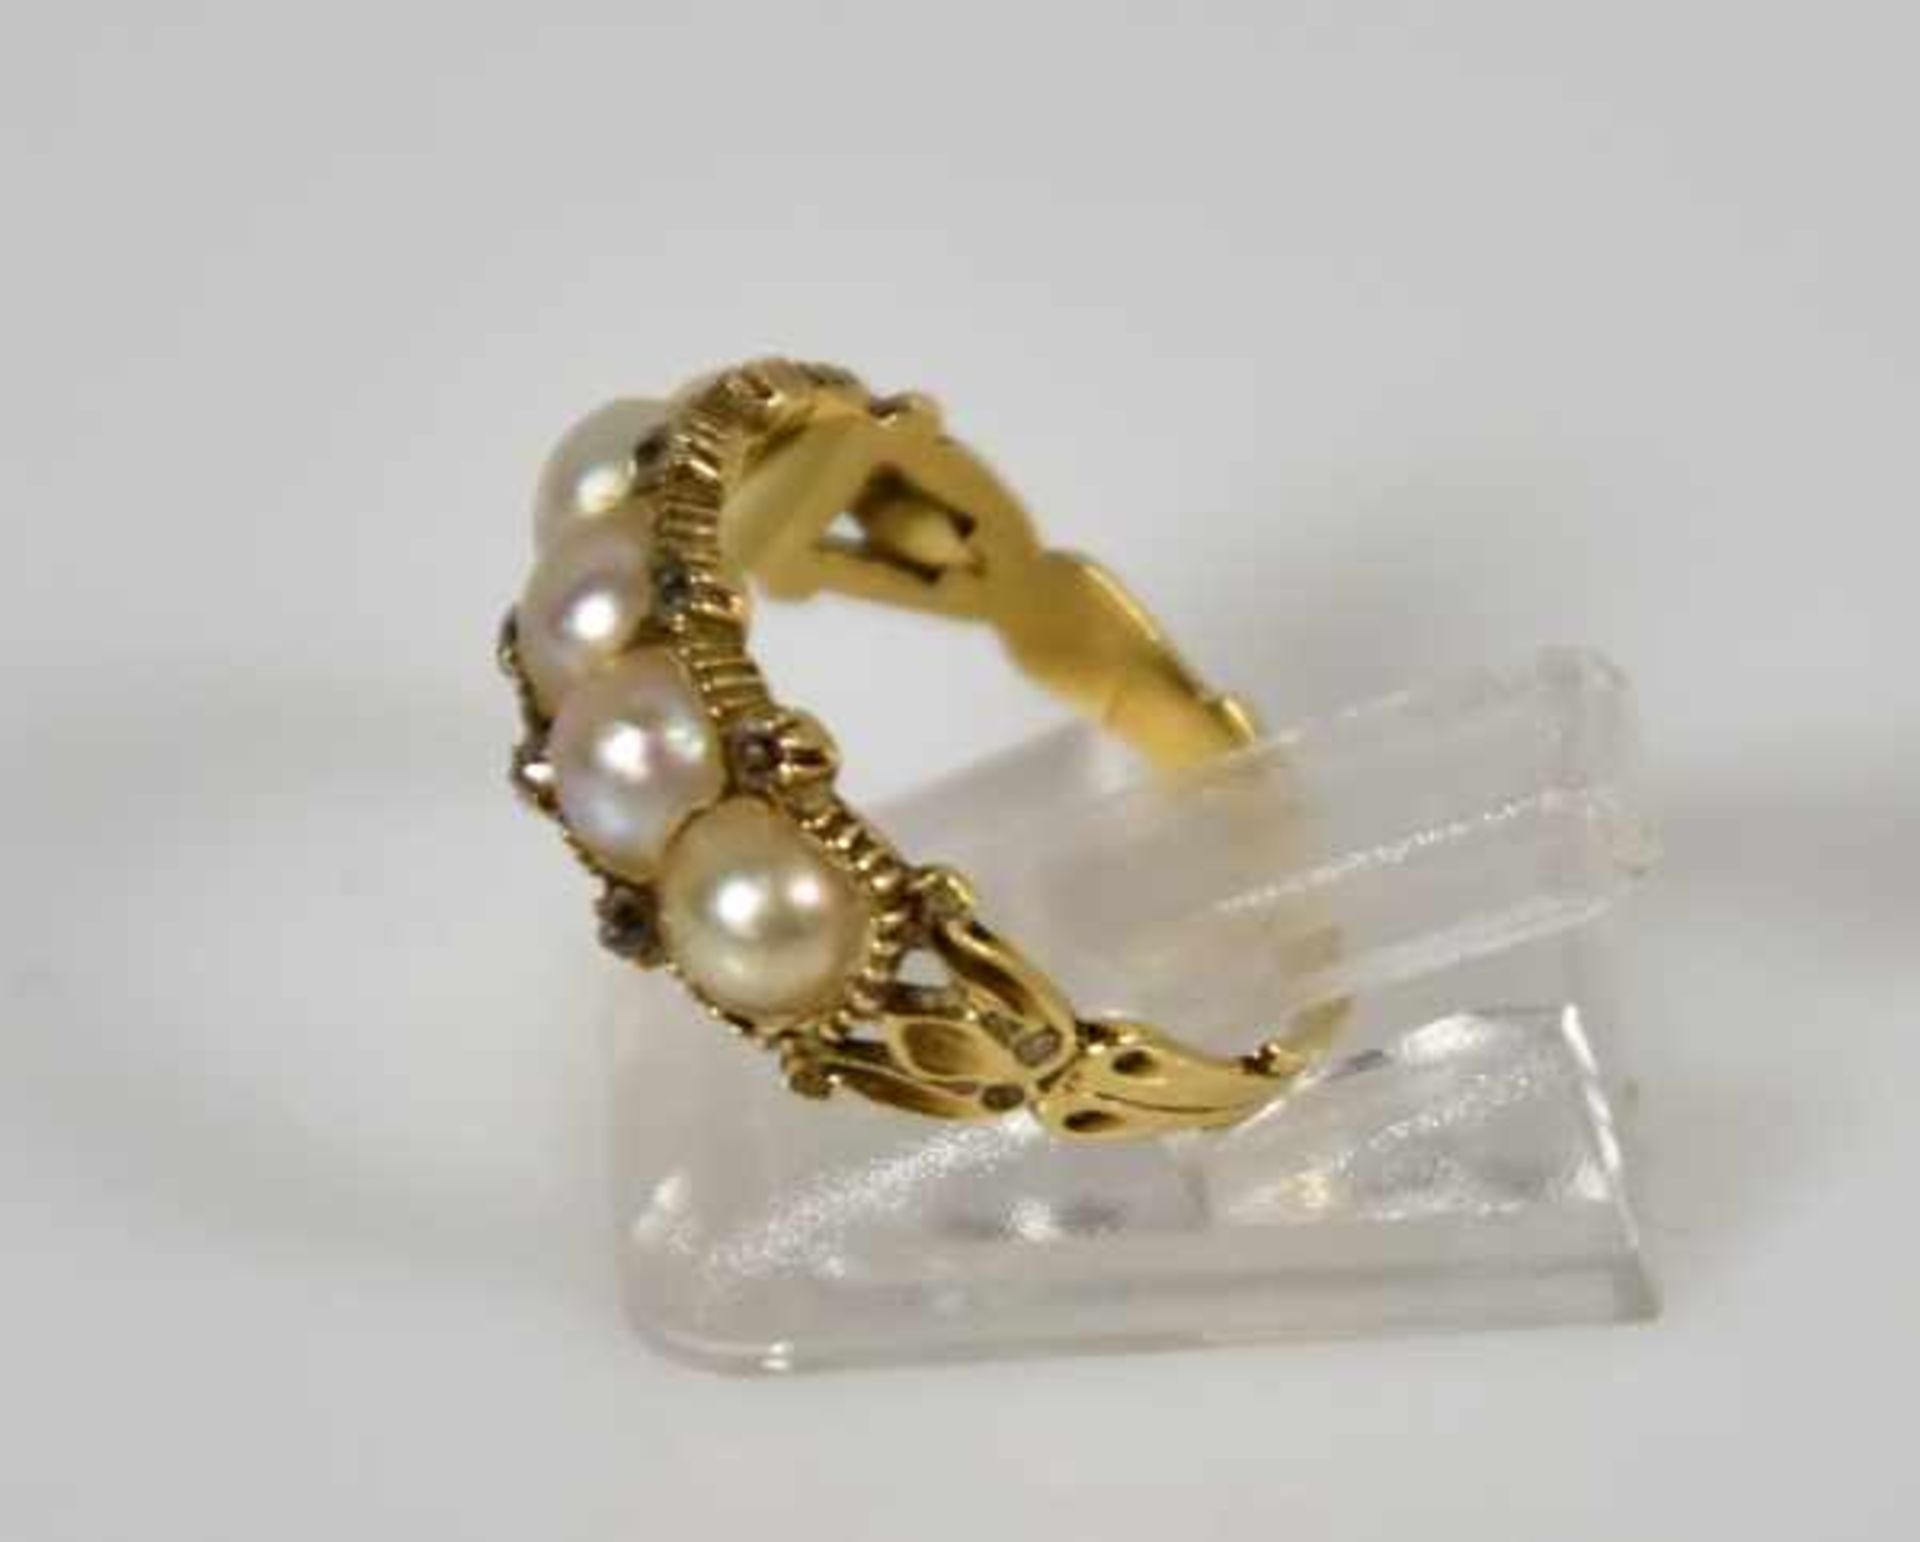 RING besetzt mit 5 weissen Perlen und kleinen Diamanten (1 fehlt), auf gebogter Goldfassung 14ct, - Bild 3 aus 3